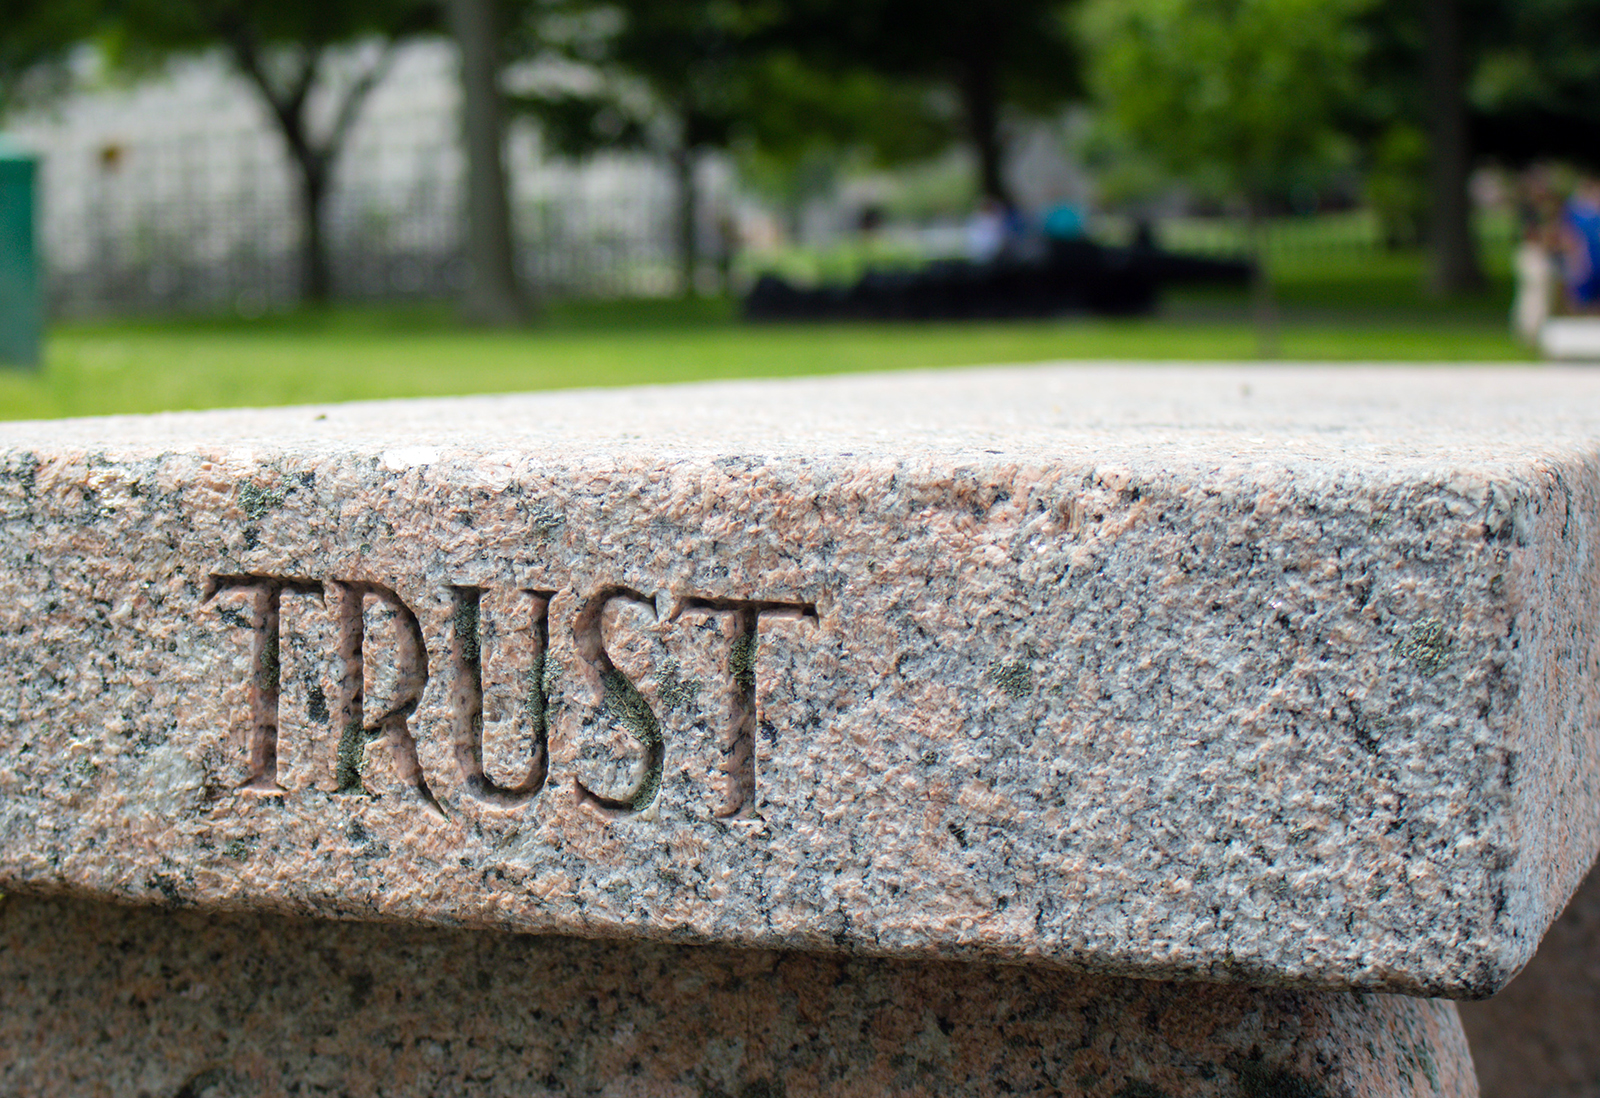 establish trust